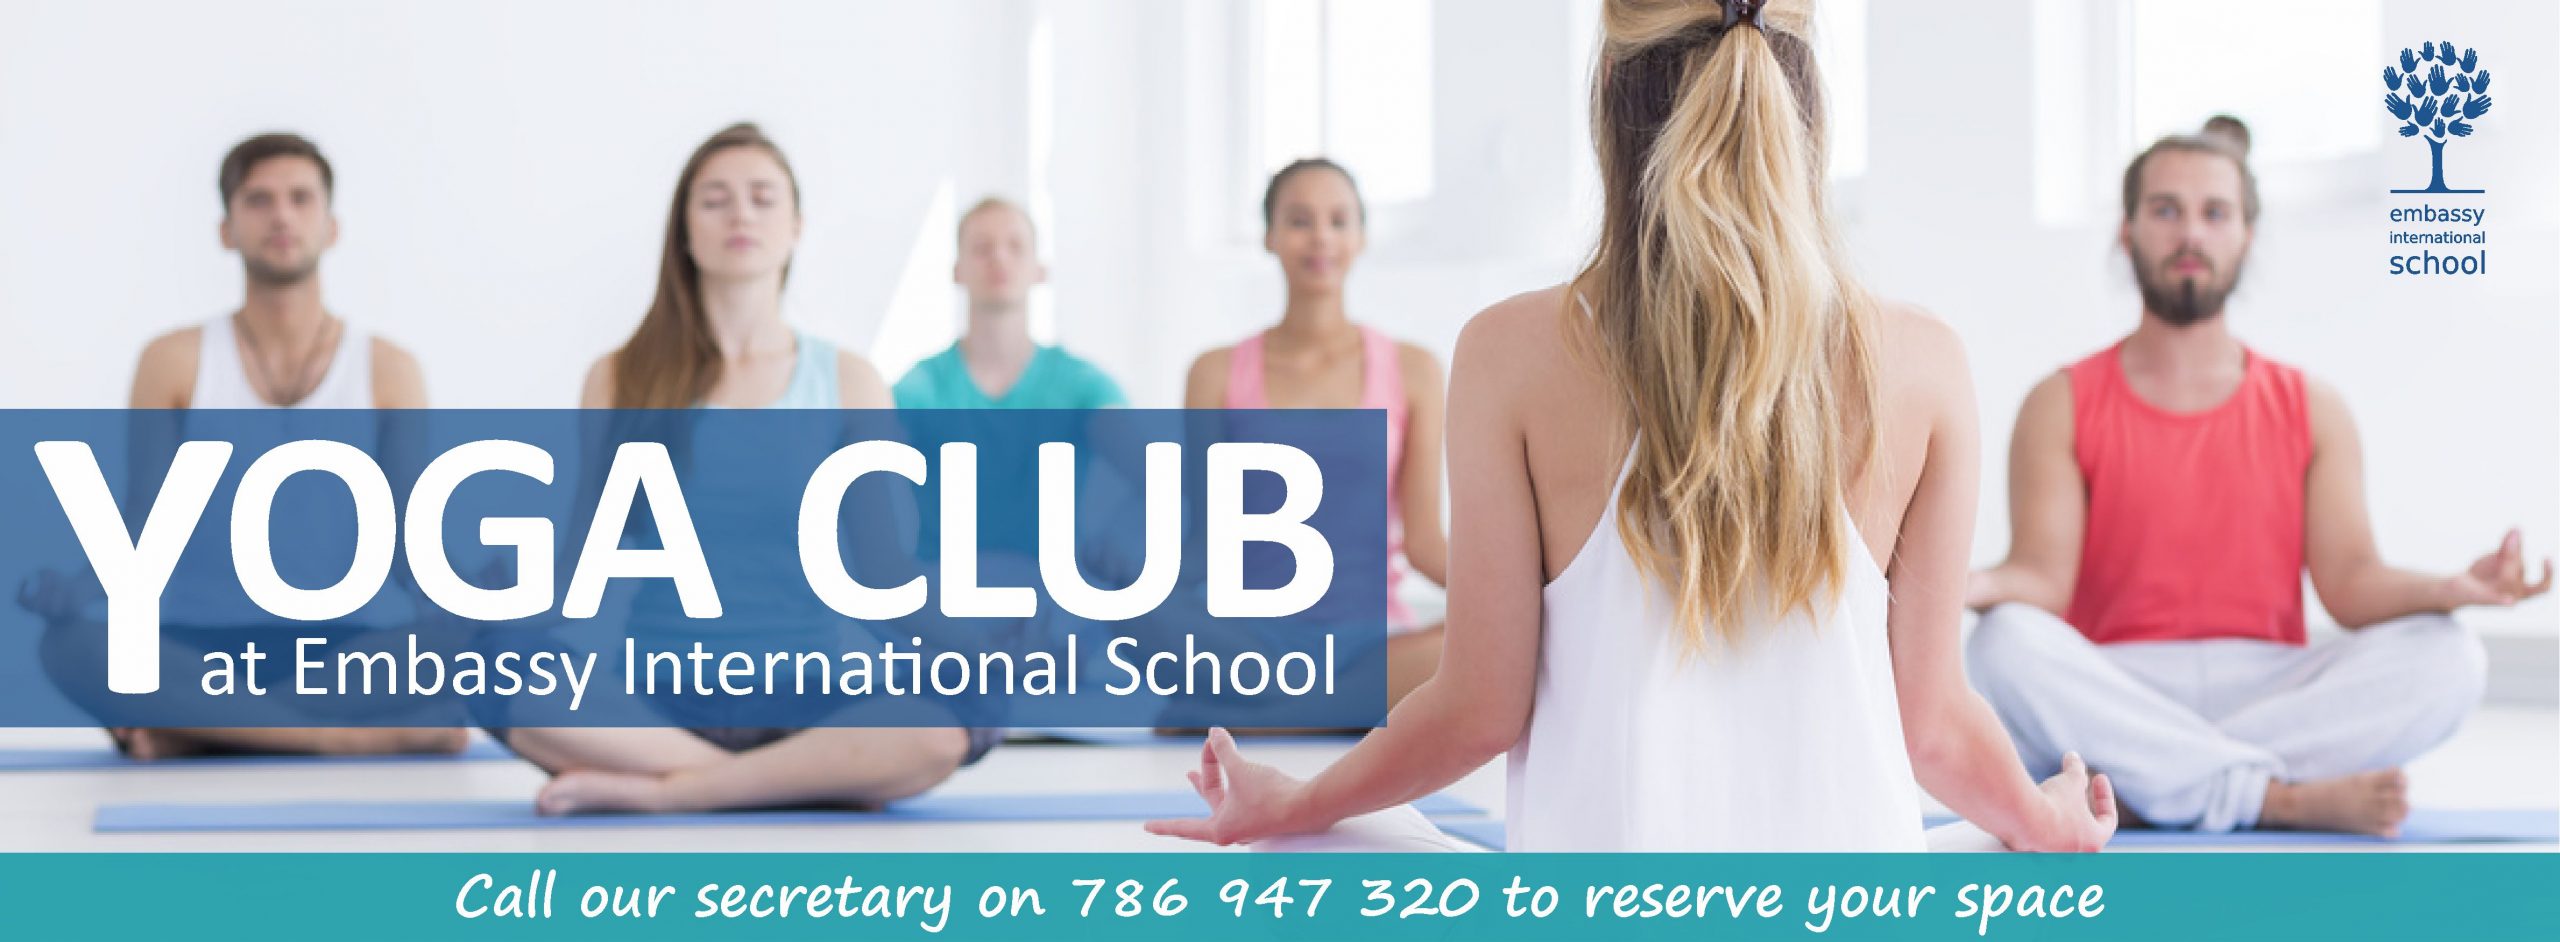 embassy-international-school-yoga-club